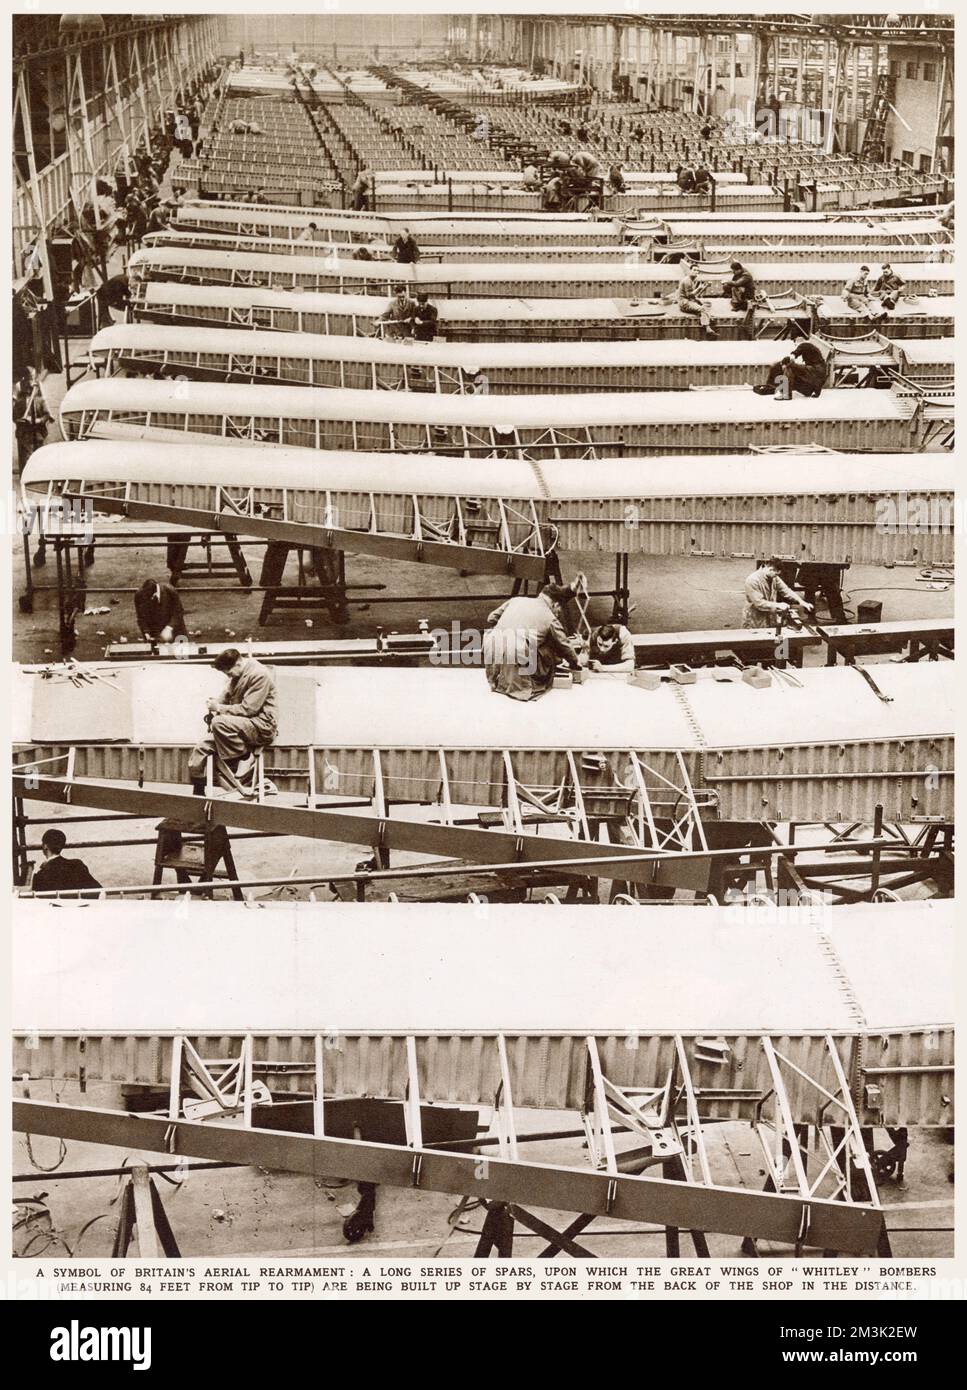 Ein riesiger Raum mit Whitley Bombers in Armstrong Whitworth in Coventry. Männer, die in der Ferne auf der Bühne von hinten nach vorn arbeiten, auf den langen Flügeln, die sich 84 Meter von der Spitze bis zur Spitze erstrecken. Stockfoto